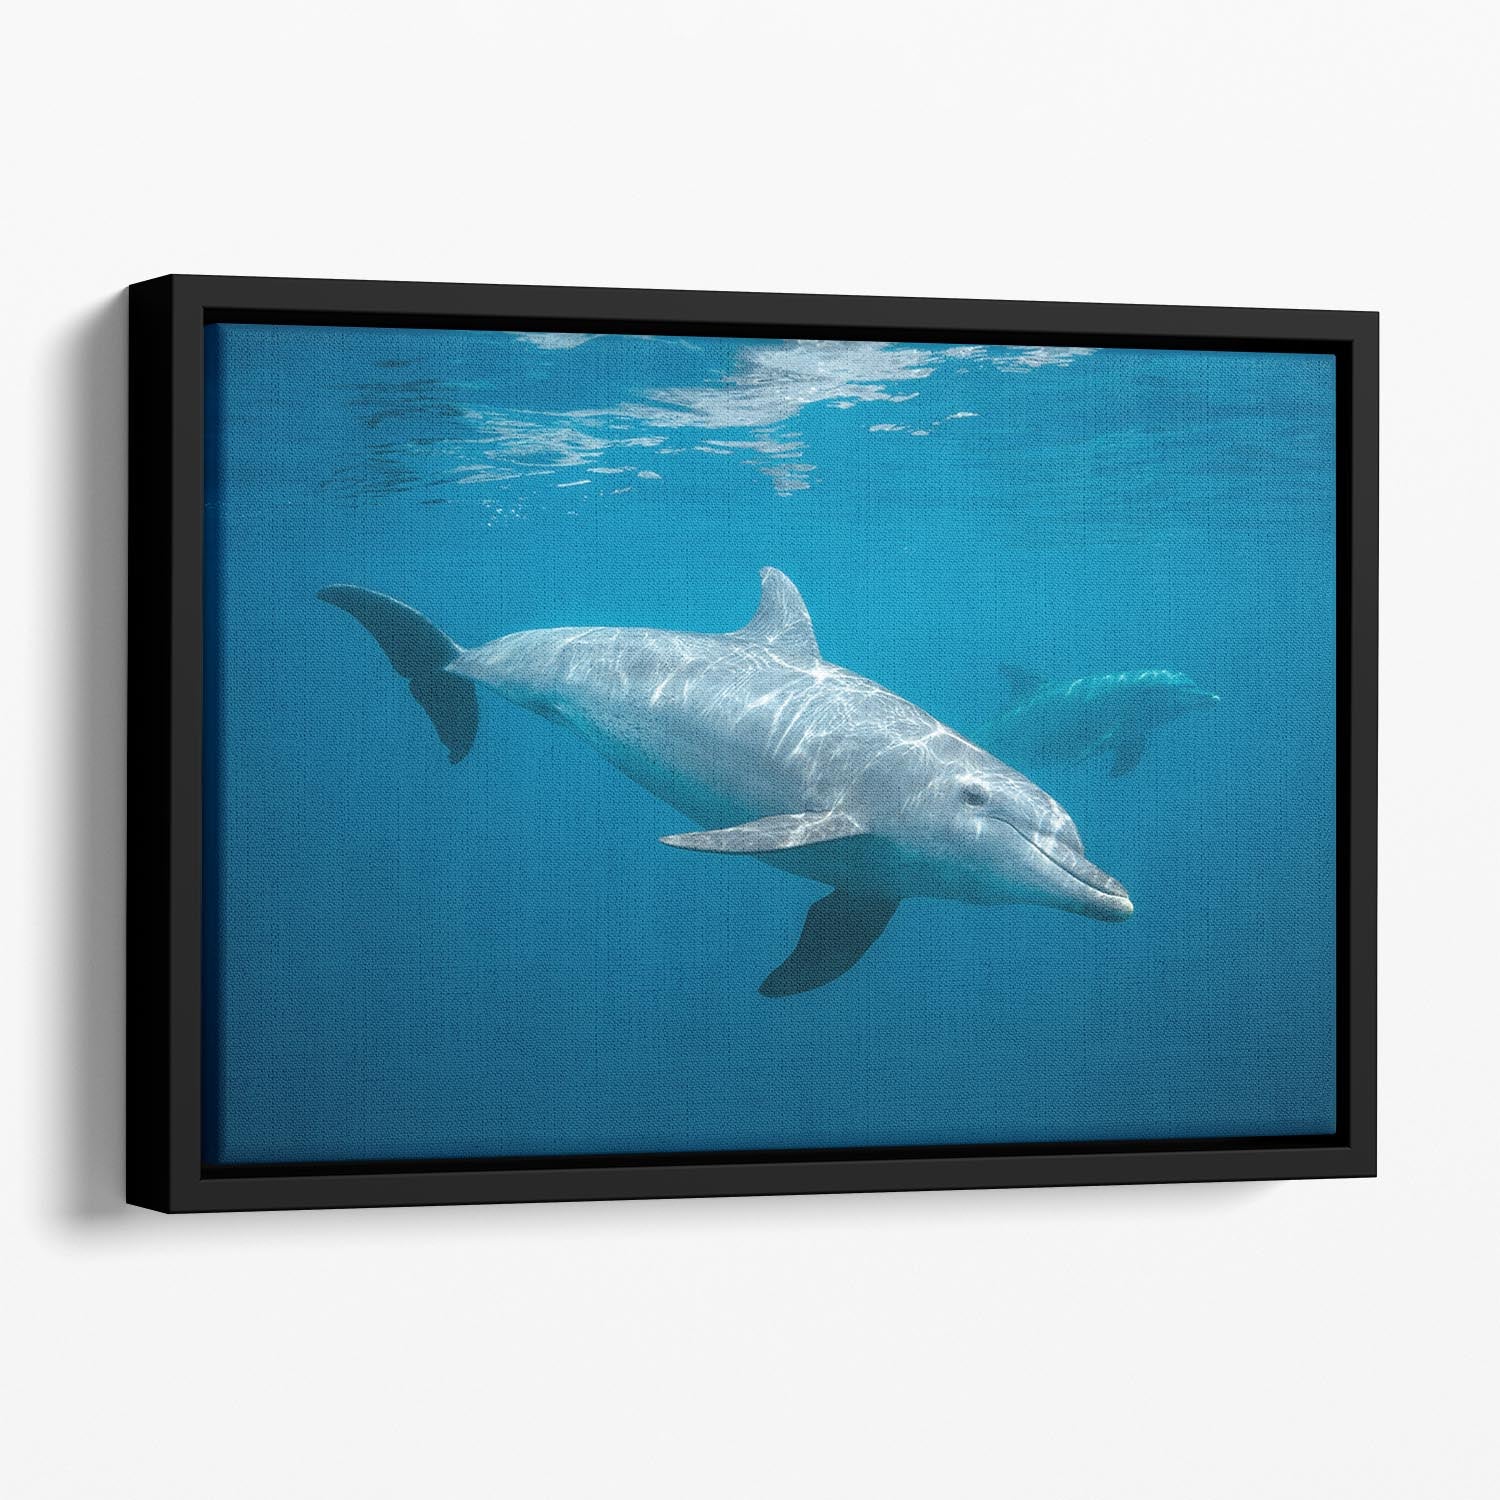 Curious Dolphin Floating Framed Canvas - Canvas Art Rocks - 1